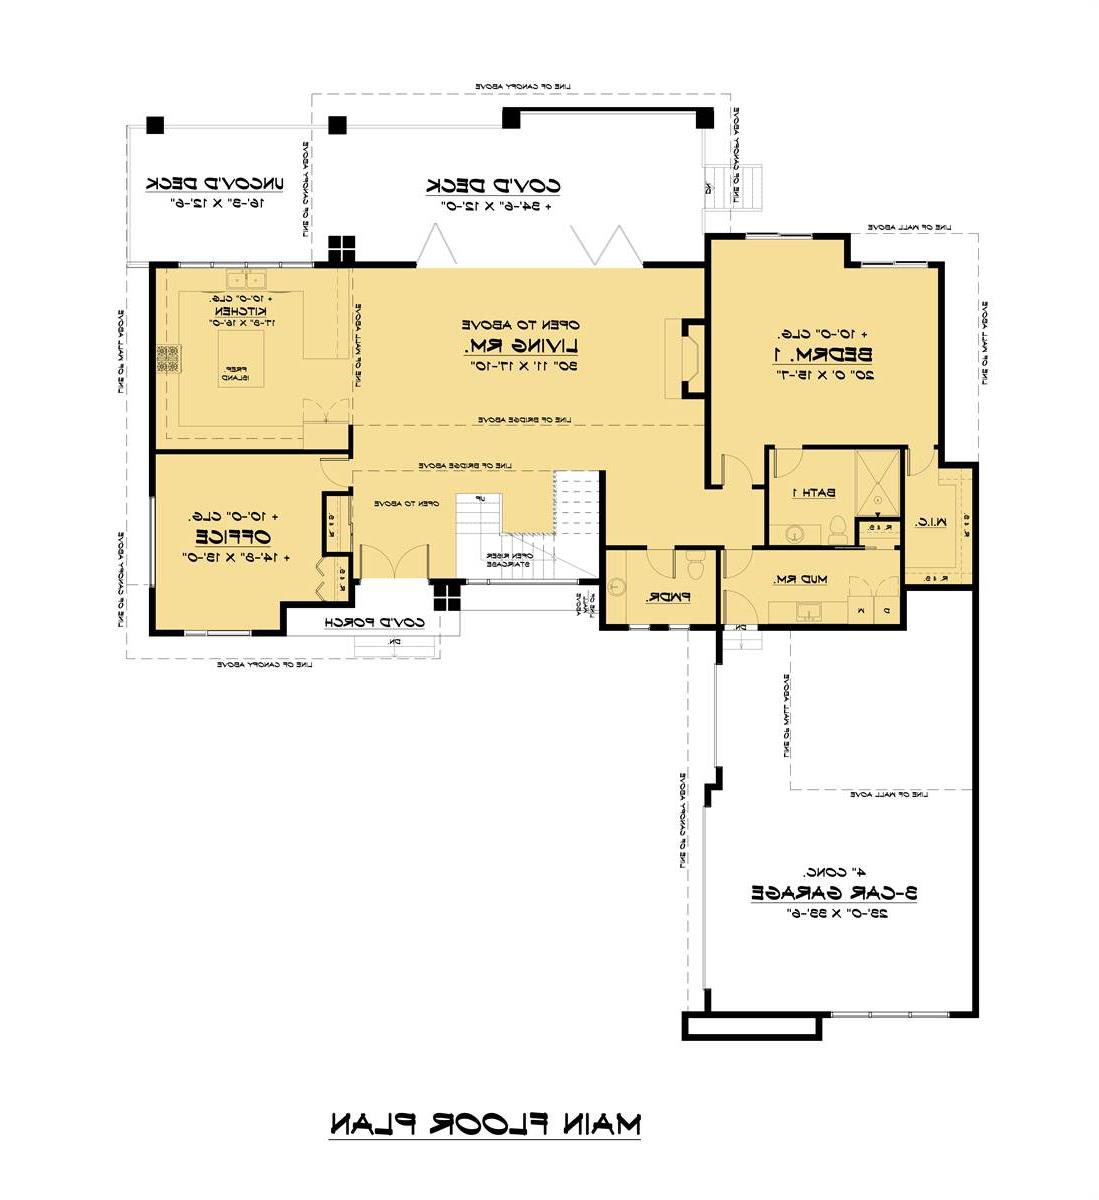 Main Floor Plan image of Edgelake (Meresi) House Plan